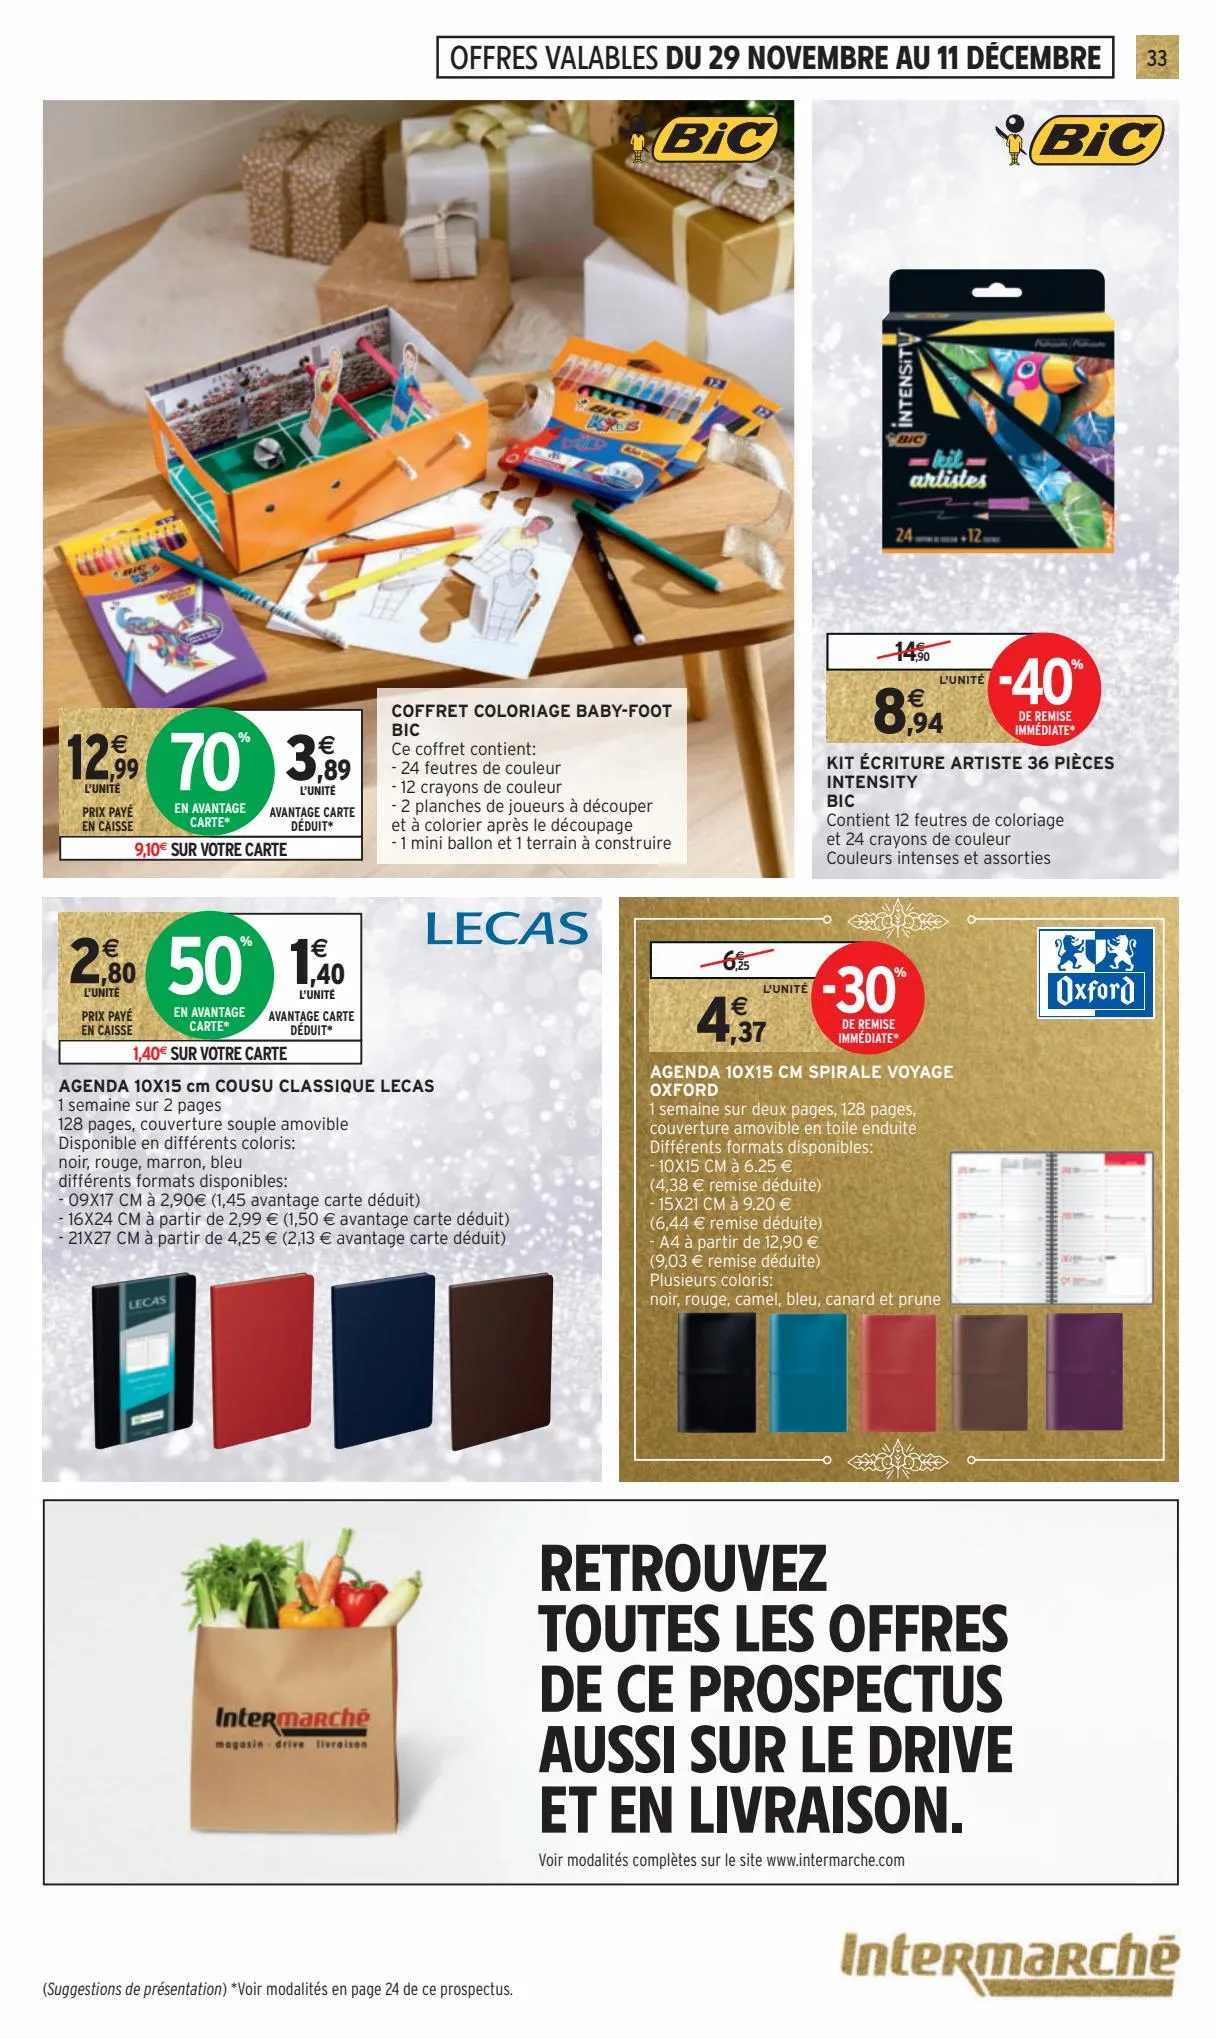 Catalogue 130€ offerts en bons d'achat, page 00033